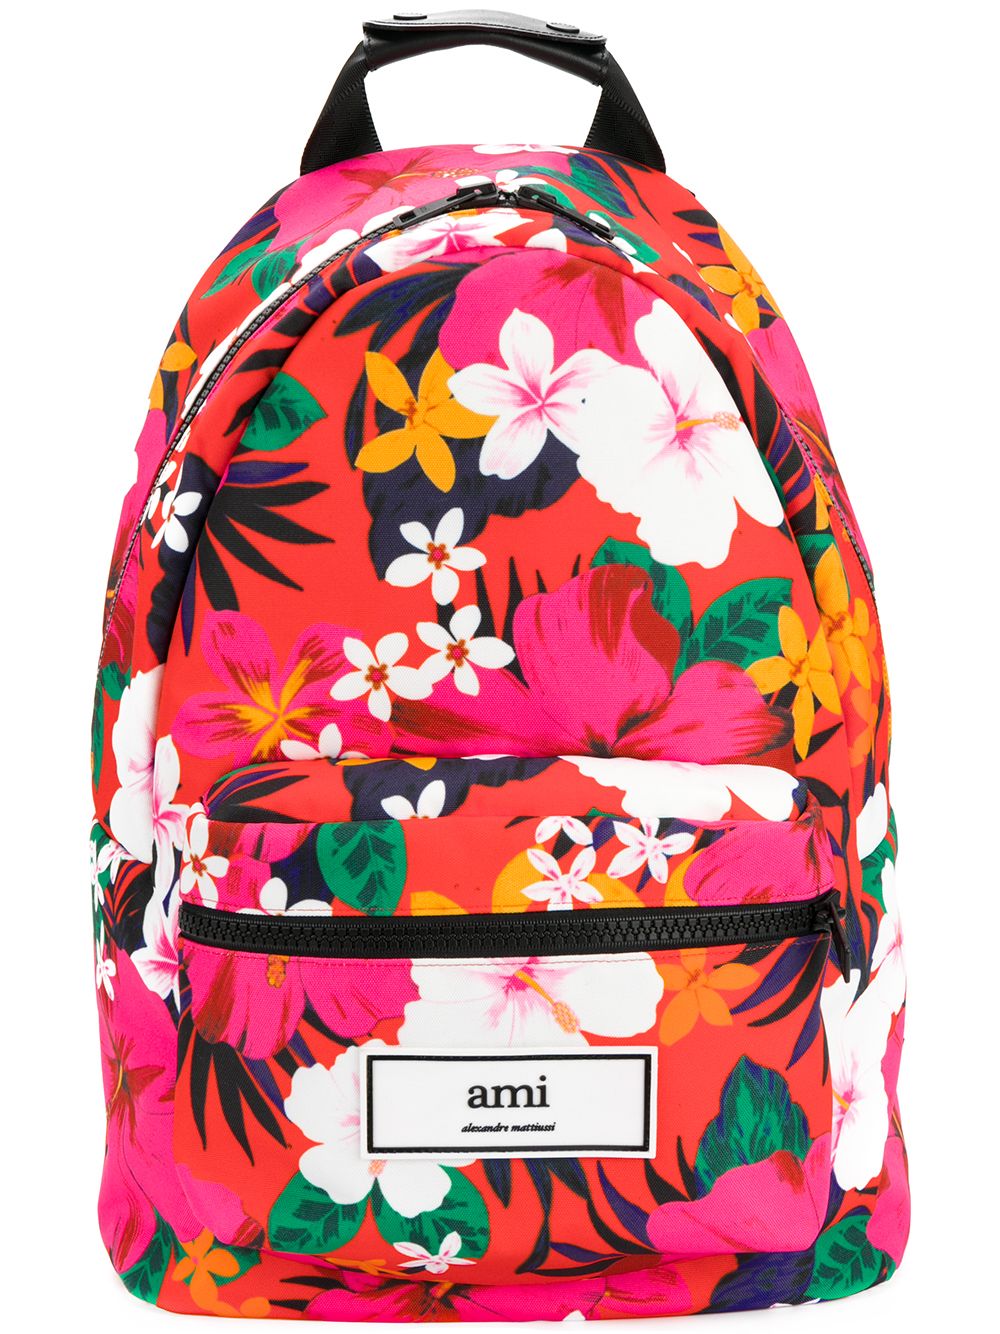 фото Ami Paris рюкзак с тропическим принтом